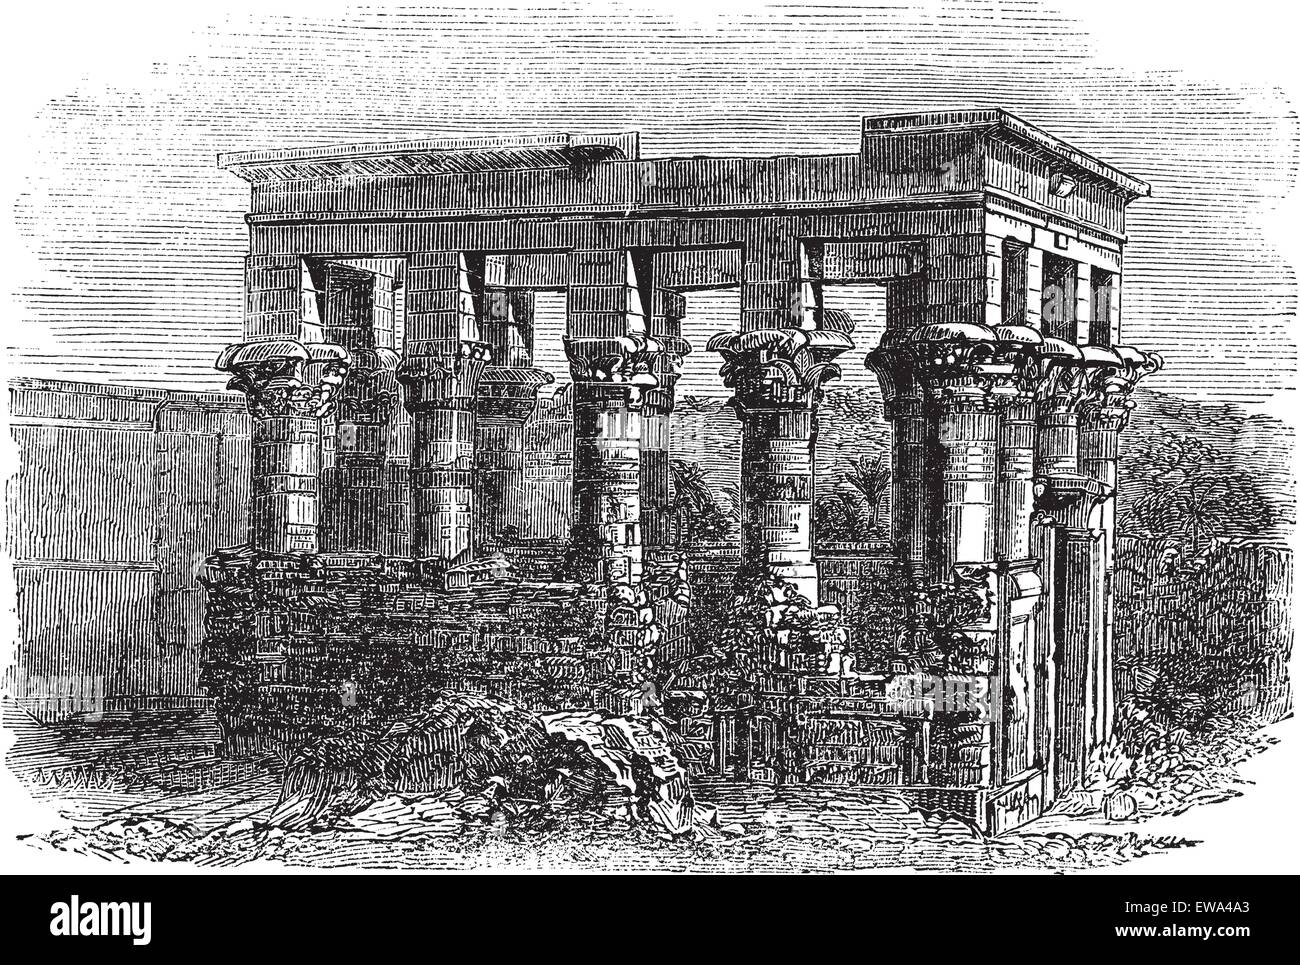 Tempel der Isis in Philae, graviert Vintage Illustration. Exterieur der Tempel der Isis während späten 1800 s. Trousset Enzyklopädie (1886-1891). Stock Vektor